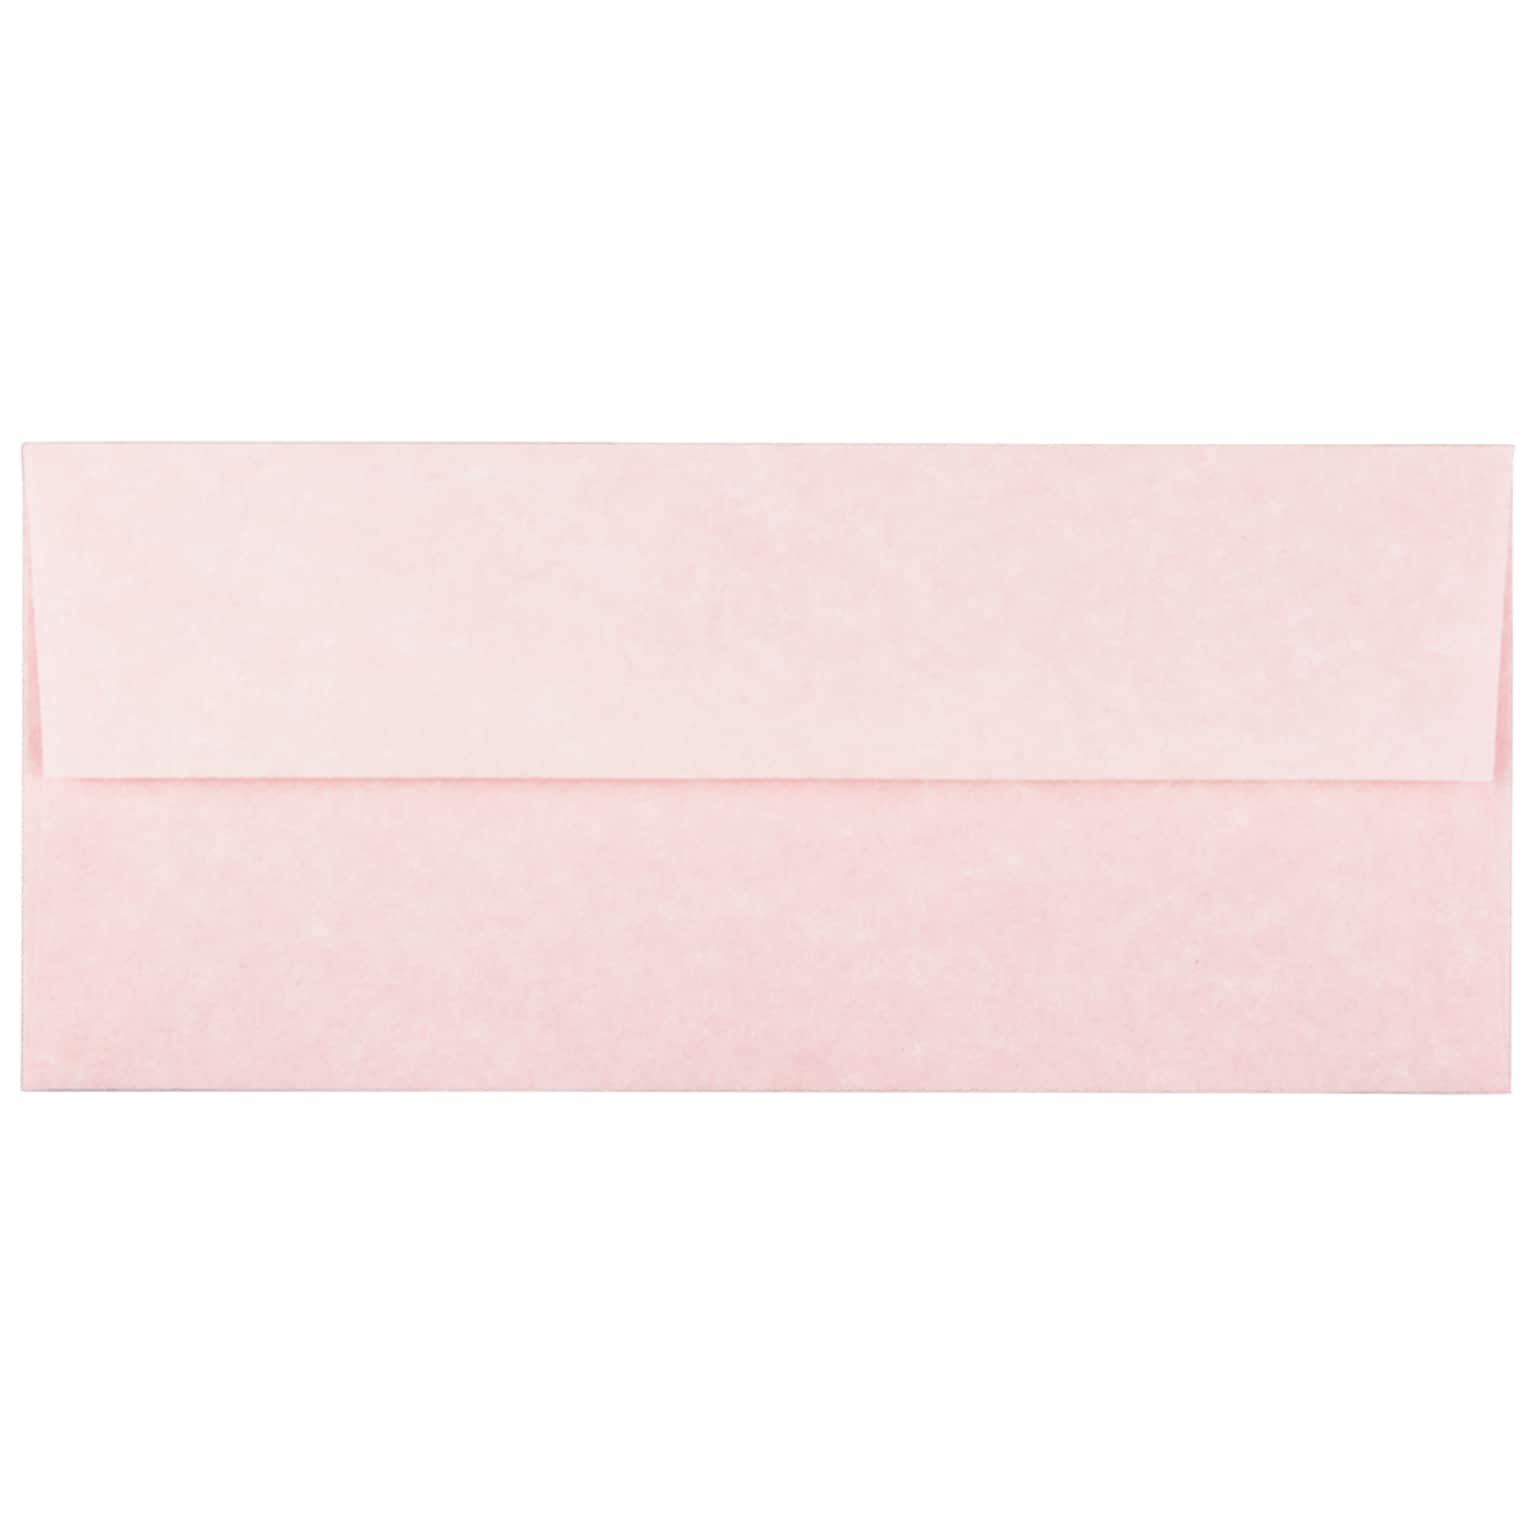 JAM Paper Open End #10 Business Envelope, 4 1/8 x 9 1/2, Pink, 50/Pack (V01728I)